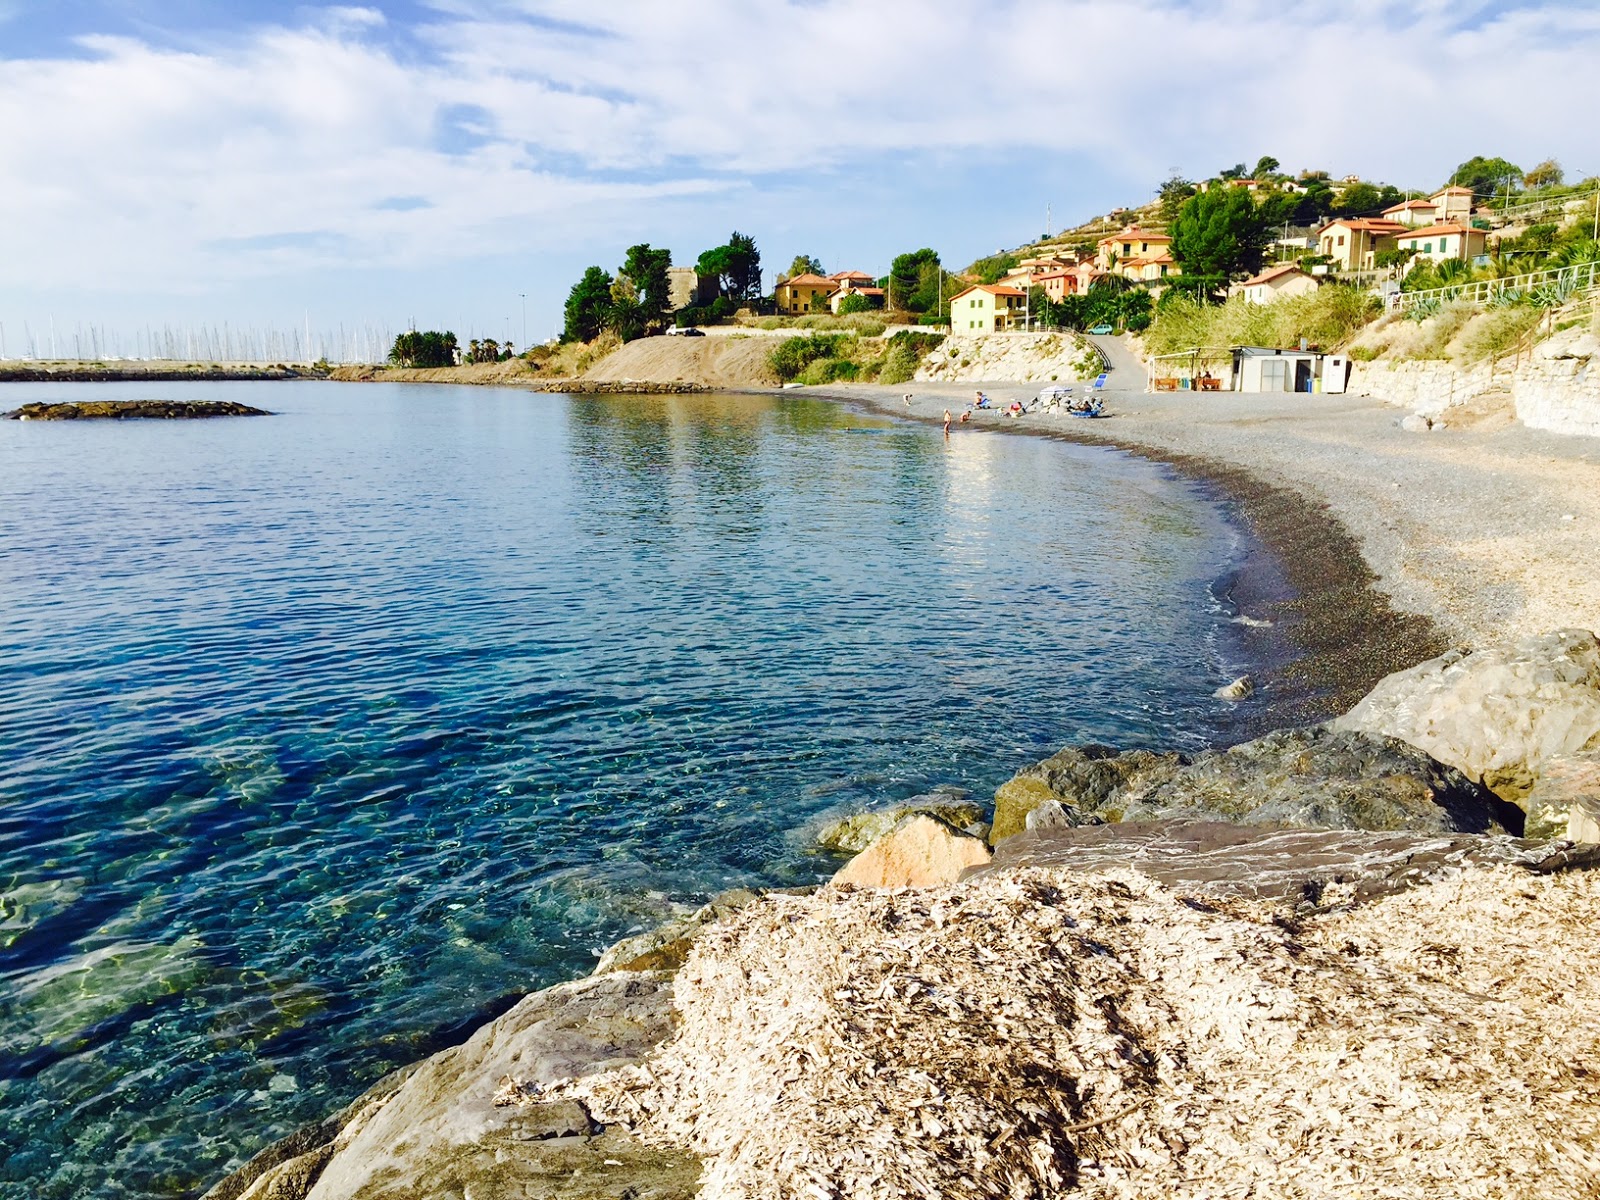 Aregai di Cipressa'in fotoğrafı gri ince çakıl taş yüzey ile